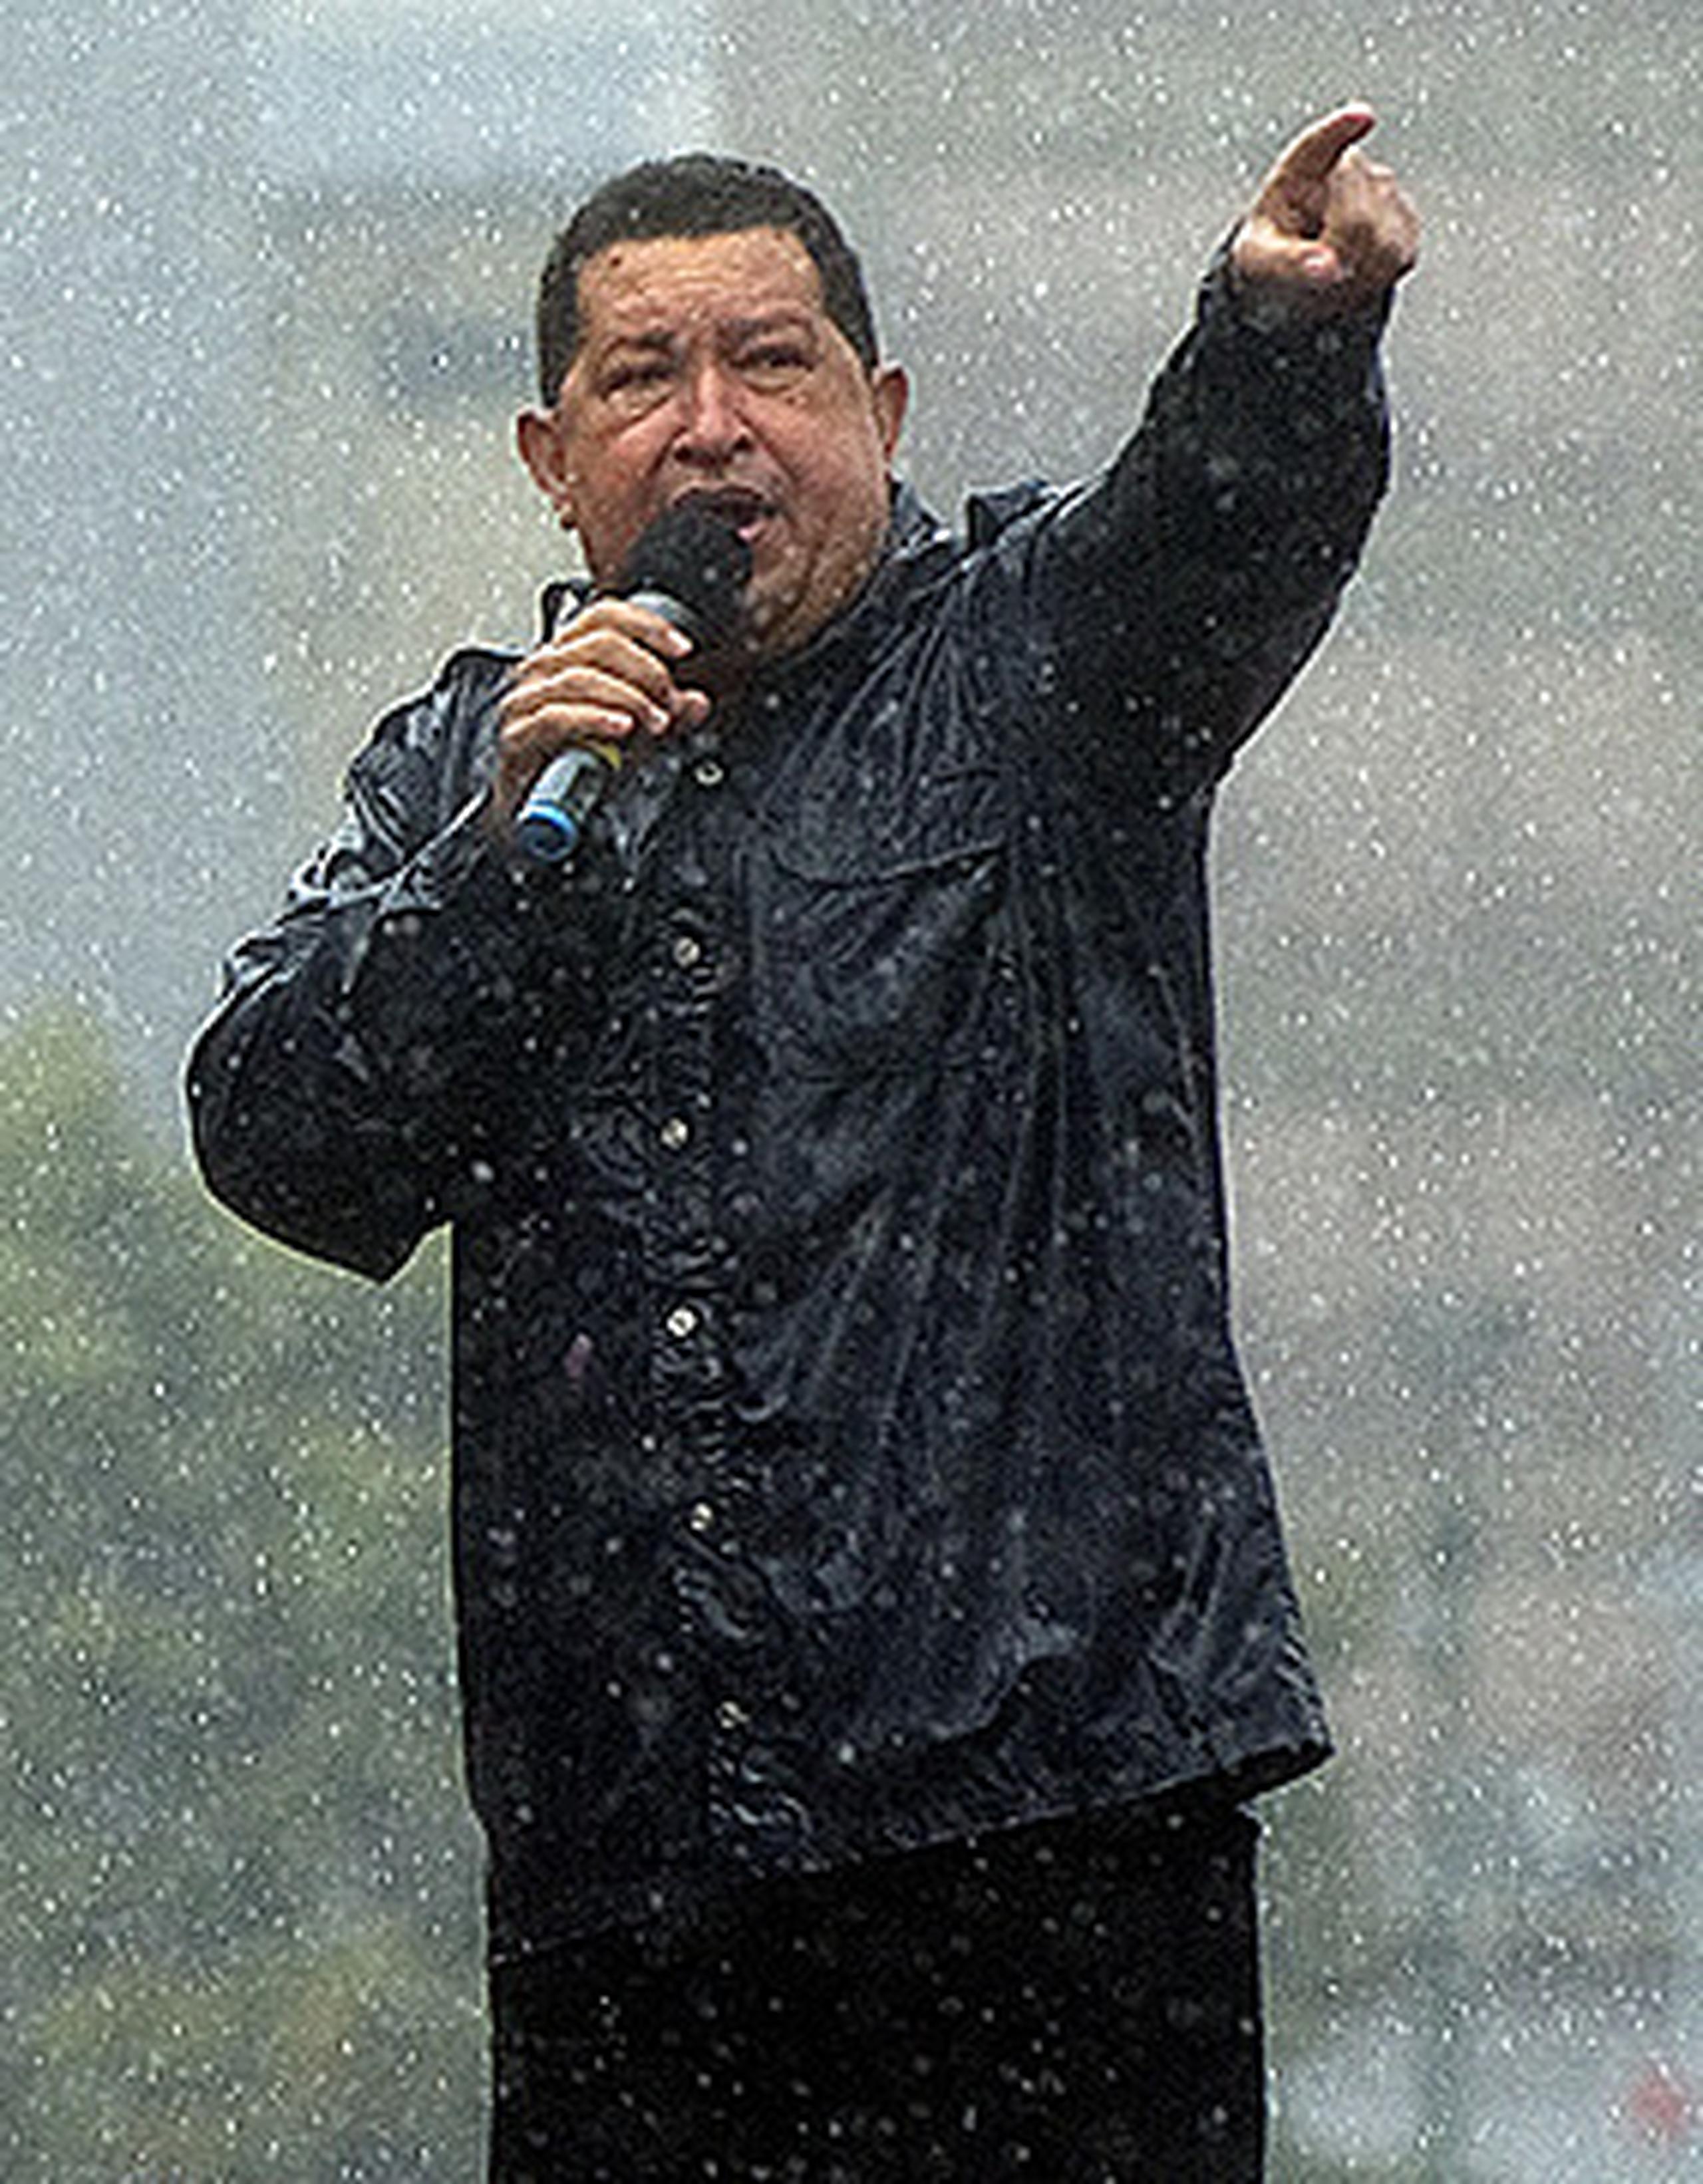 7 de octubre, 2012 - Chávez gana un nuevo período de seis años con 55% de los votos. (AFP)